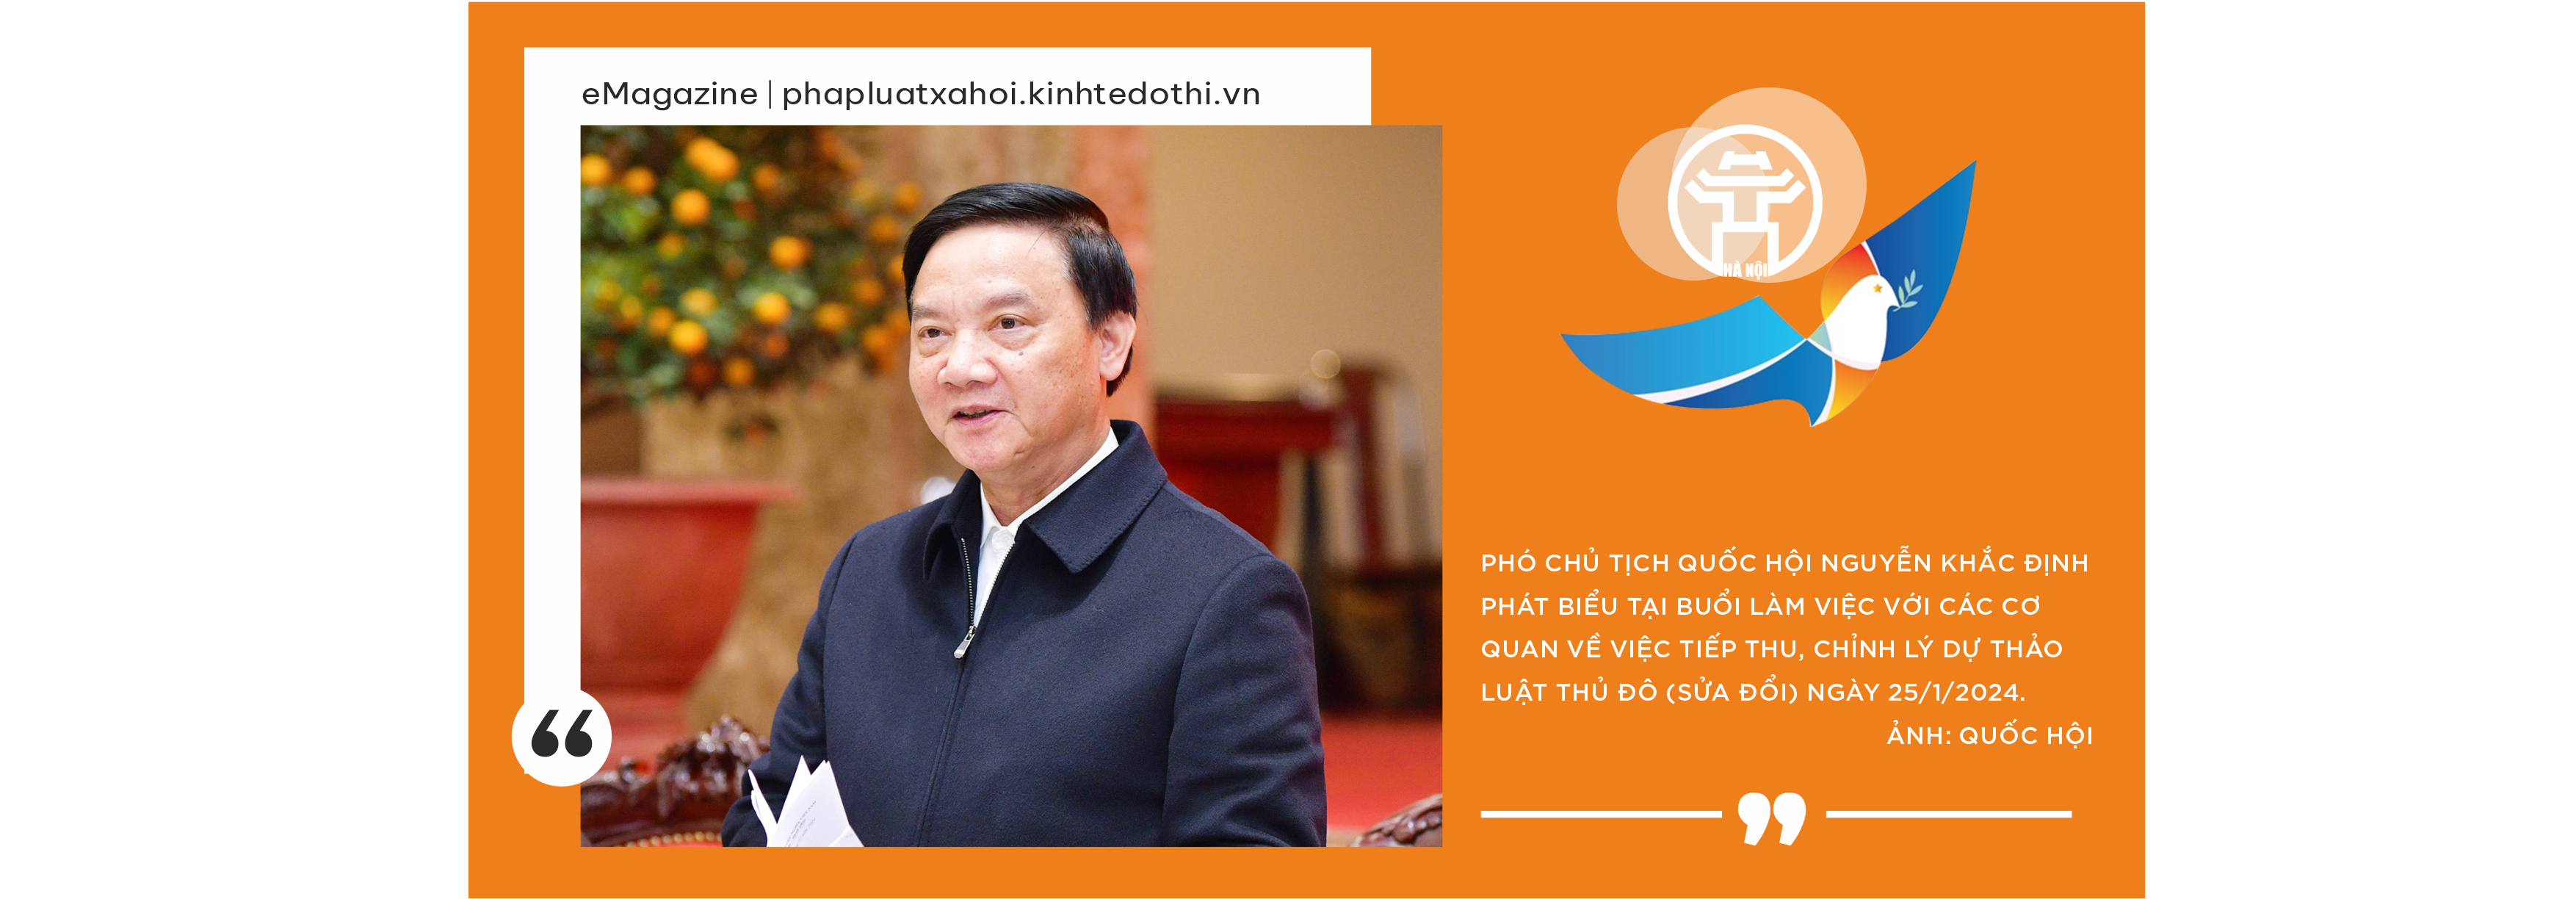 Kỳ 3: Hà Nội với nỗ lực hoàn thiện dự án Luật Thủ đô (sửa đổi)